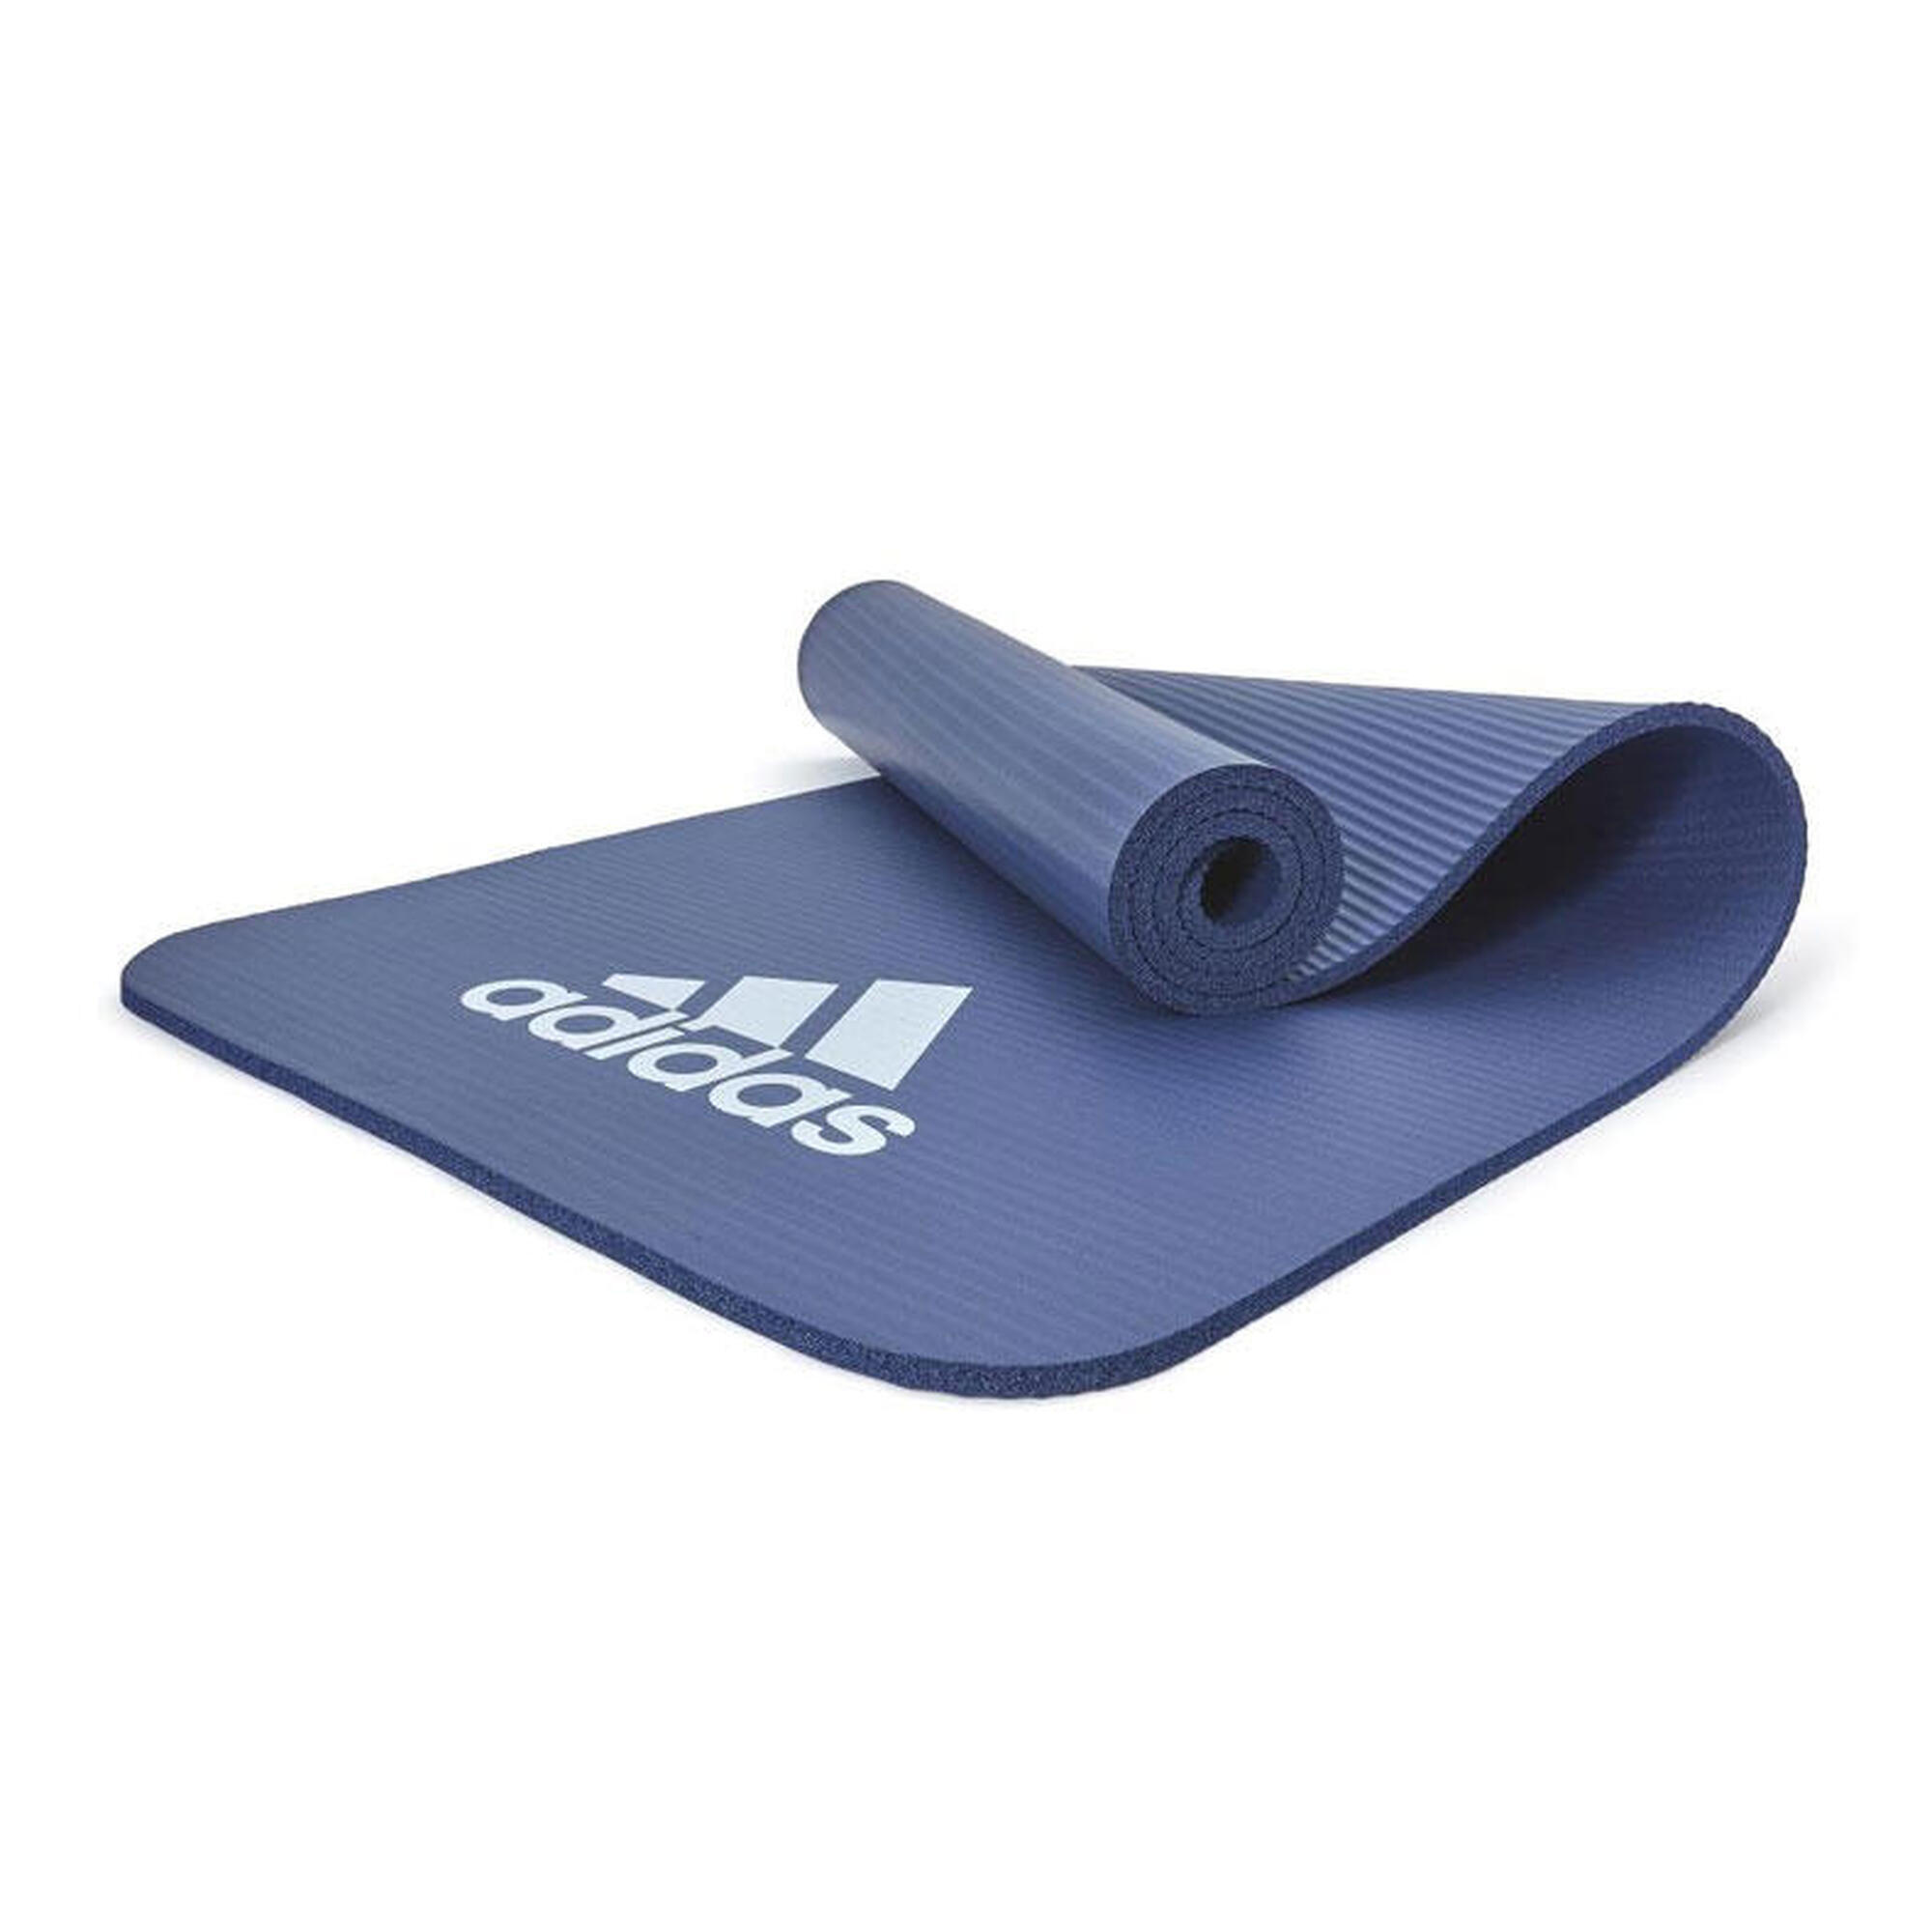 Tapis de fitness Adidas - 10mm - Bleu